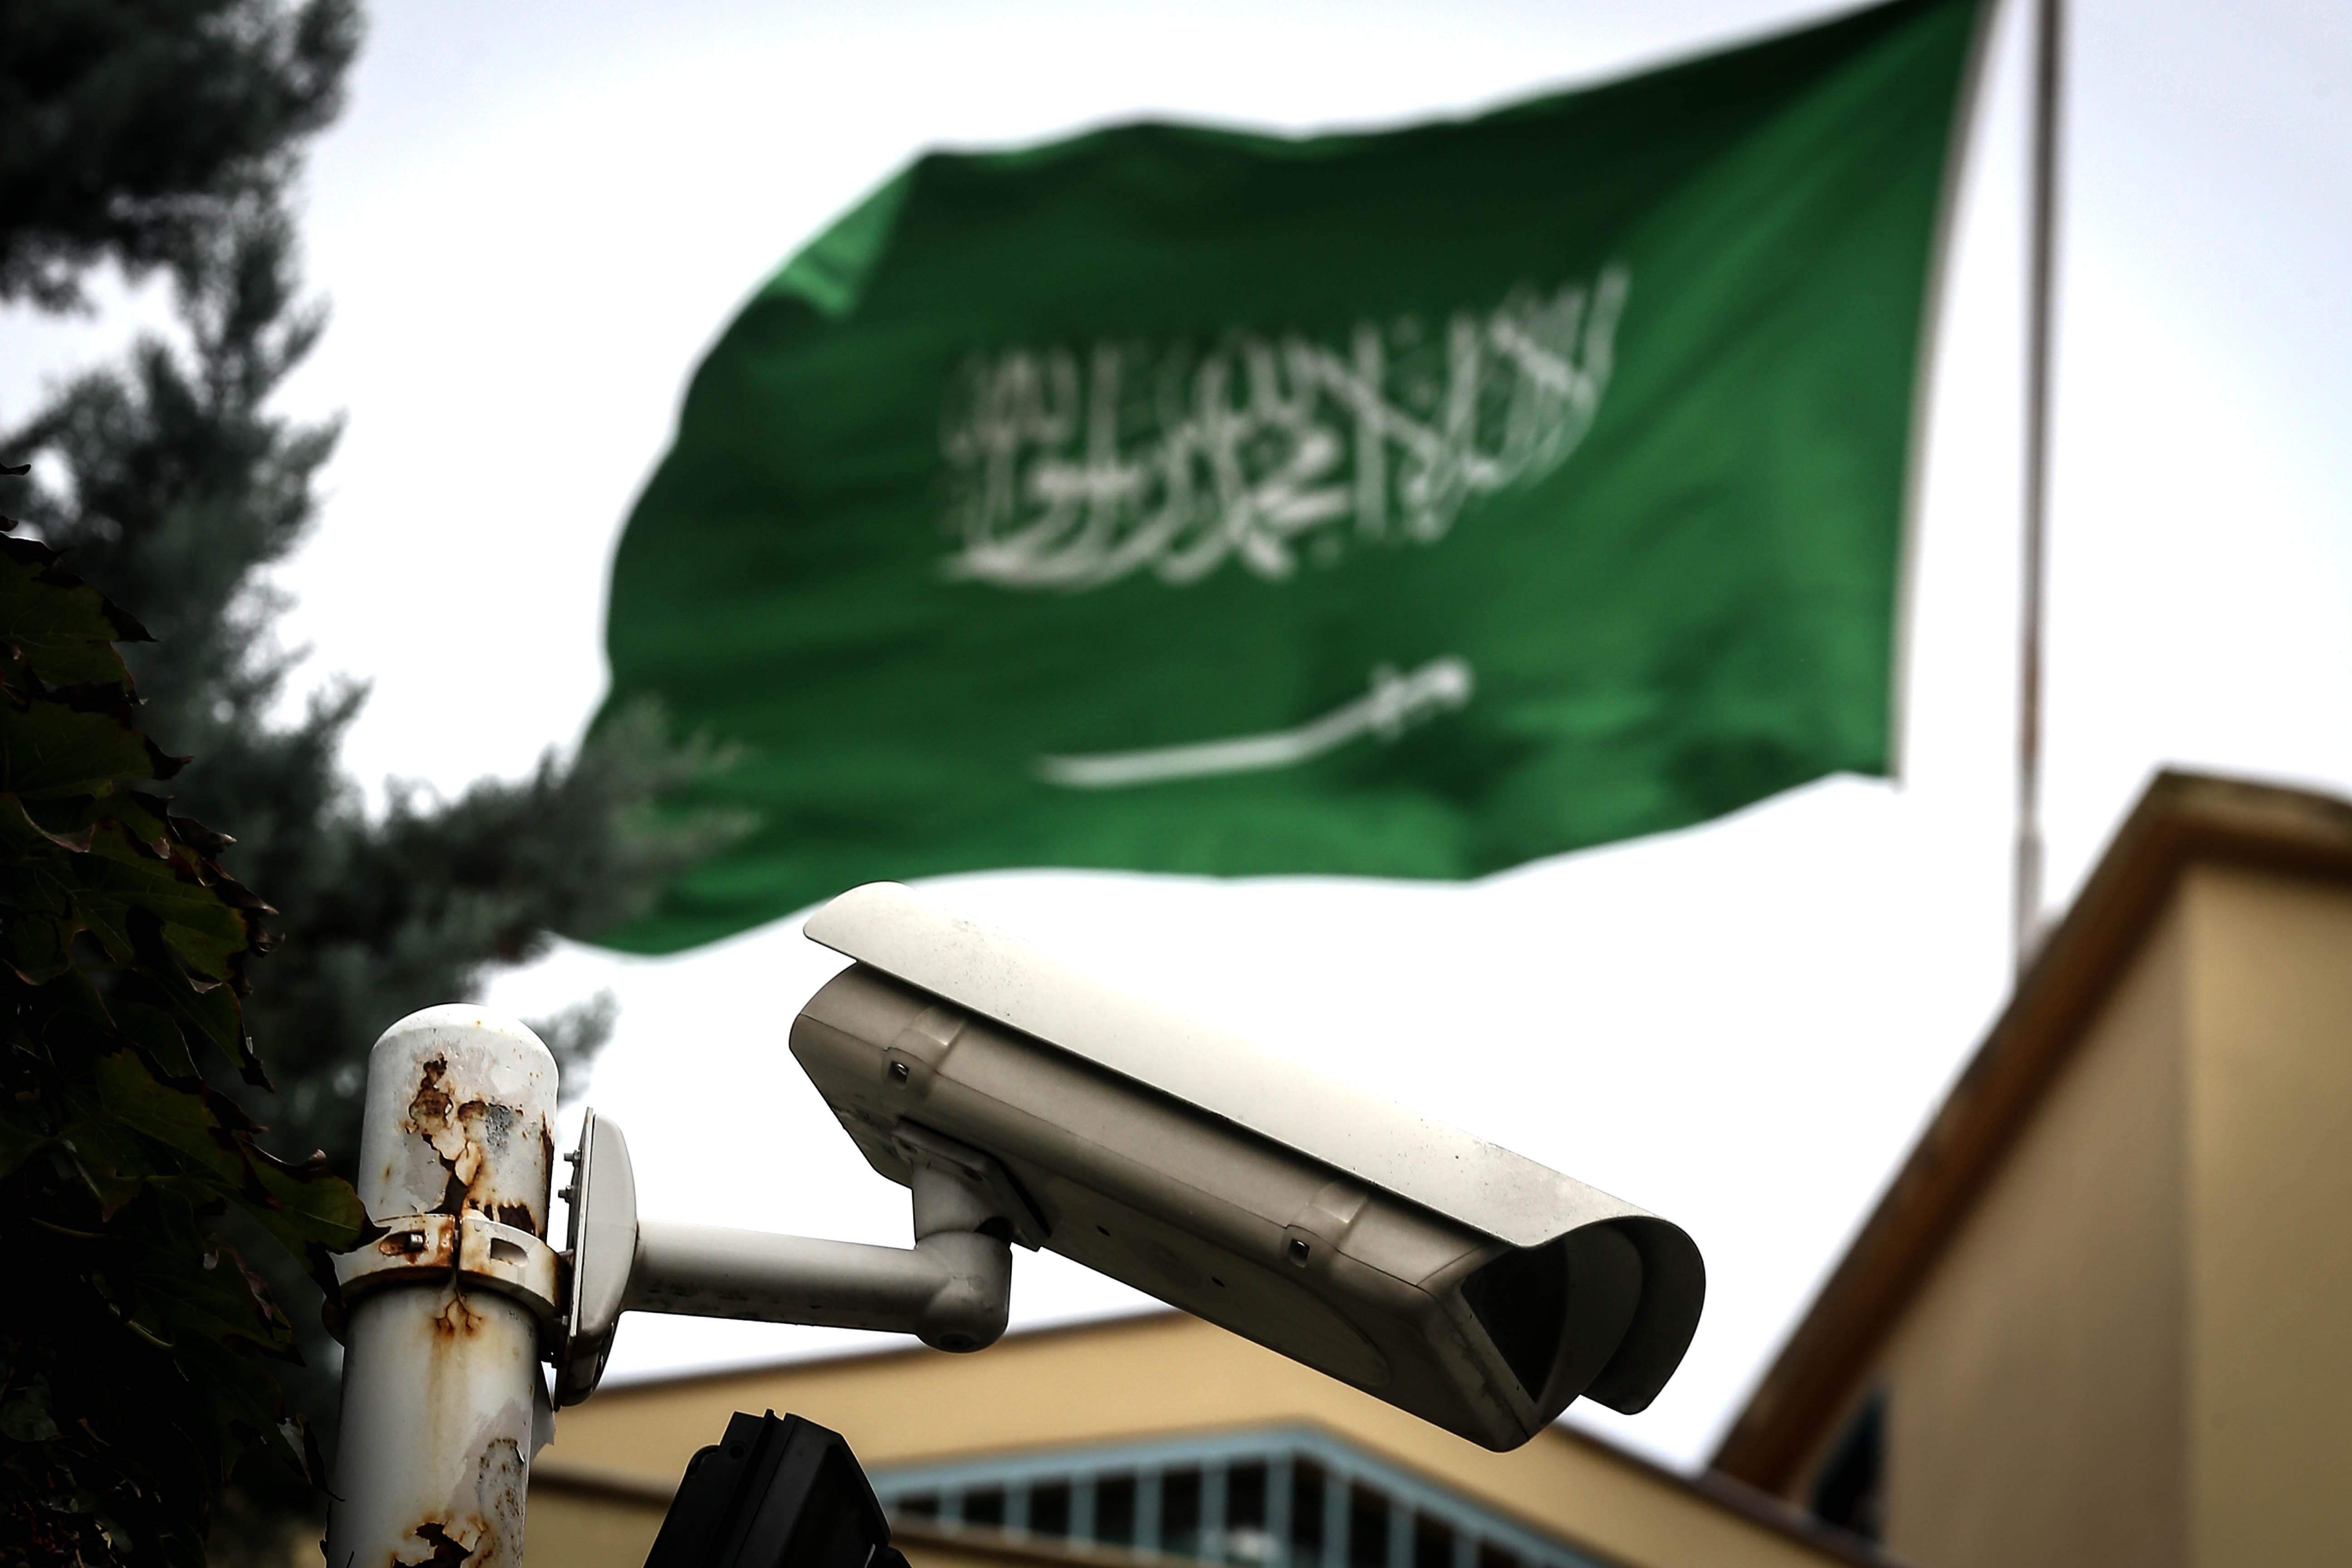 Kayıp Suudi gazeteci soruşturmasında kritik gelişme